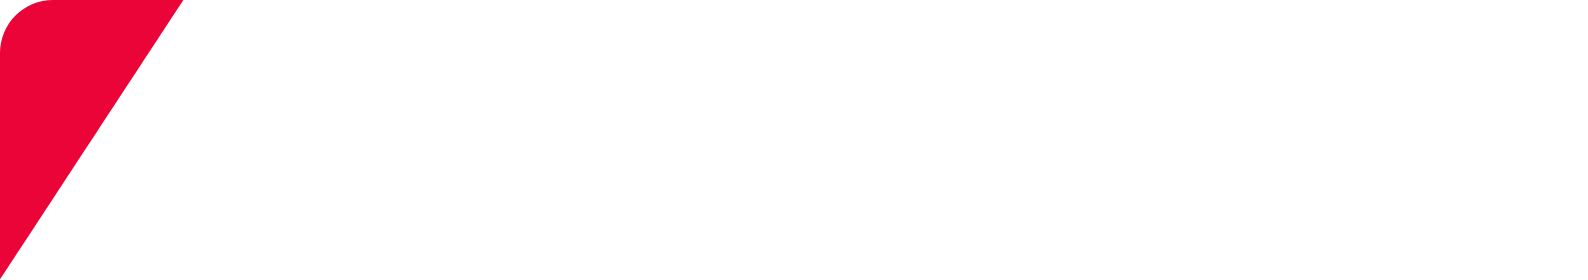 Keyence logo grand pour les fonds sombres (PNG transparent)